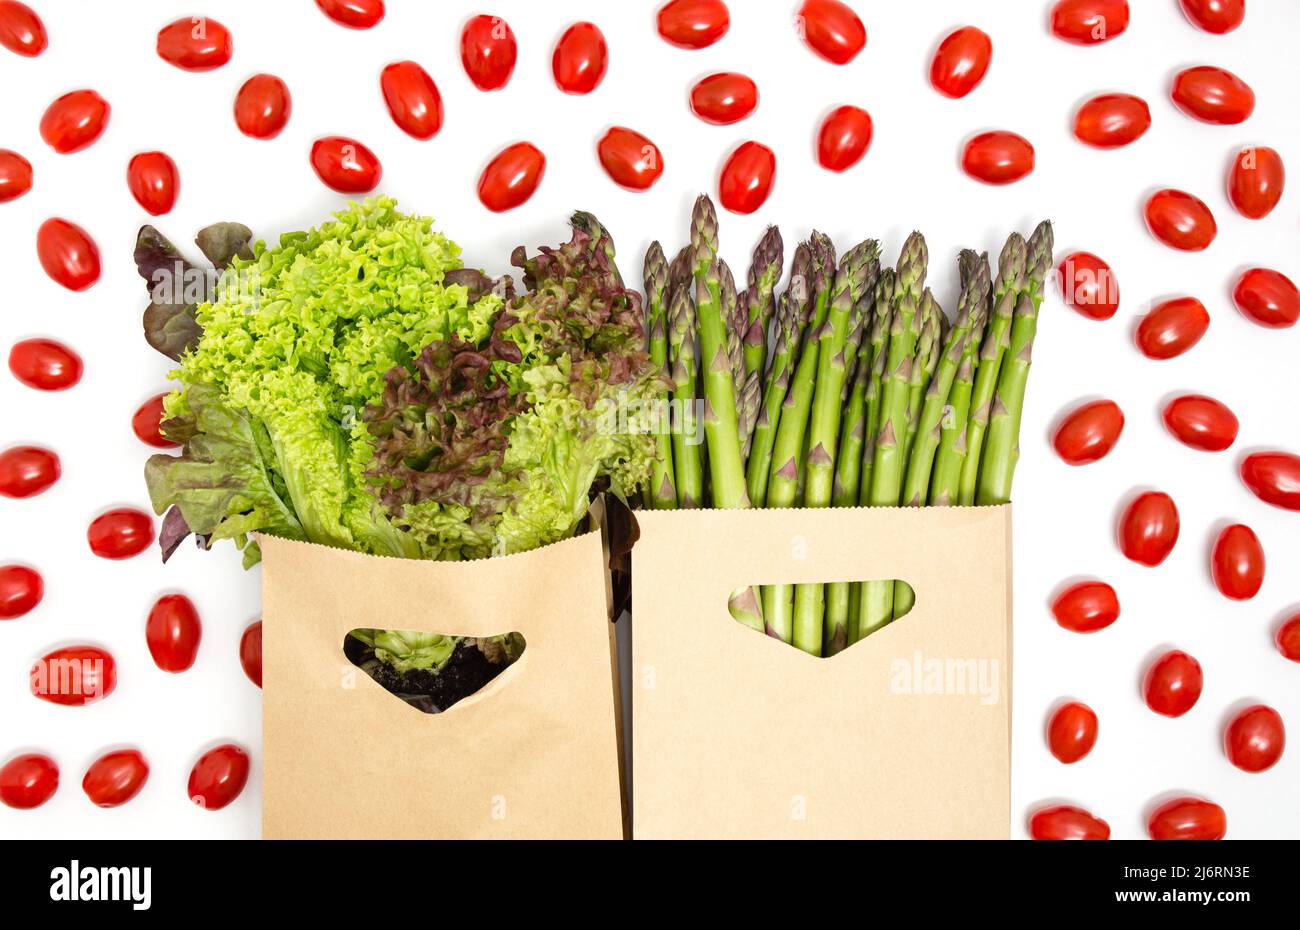 Verdure verdi e rosse - lattuga, asparagi e pomodori ciliegini isolati su sfondo bianco. Dieta sana, prodotti vegetariani, negozi di alimentari Foto Stock